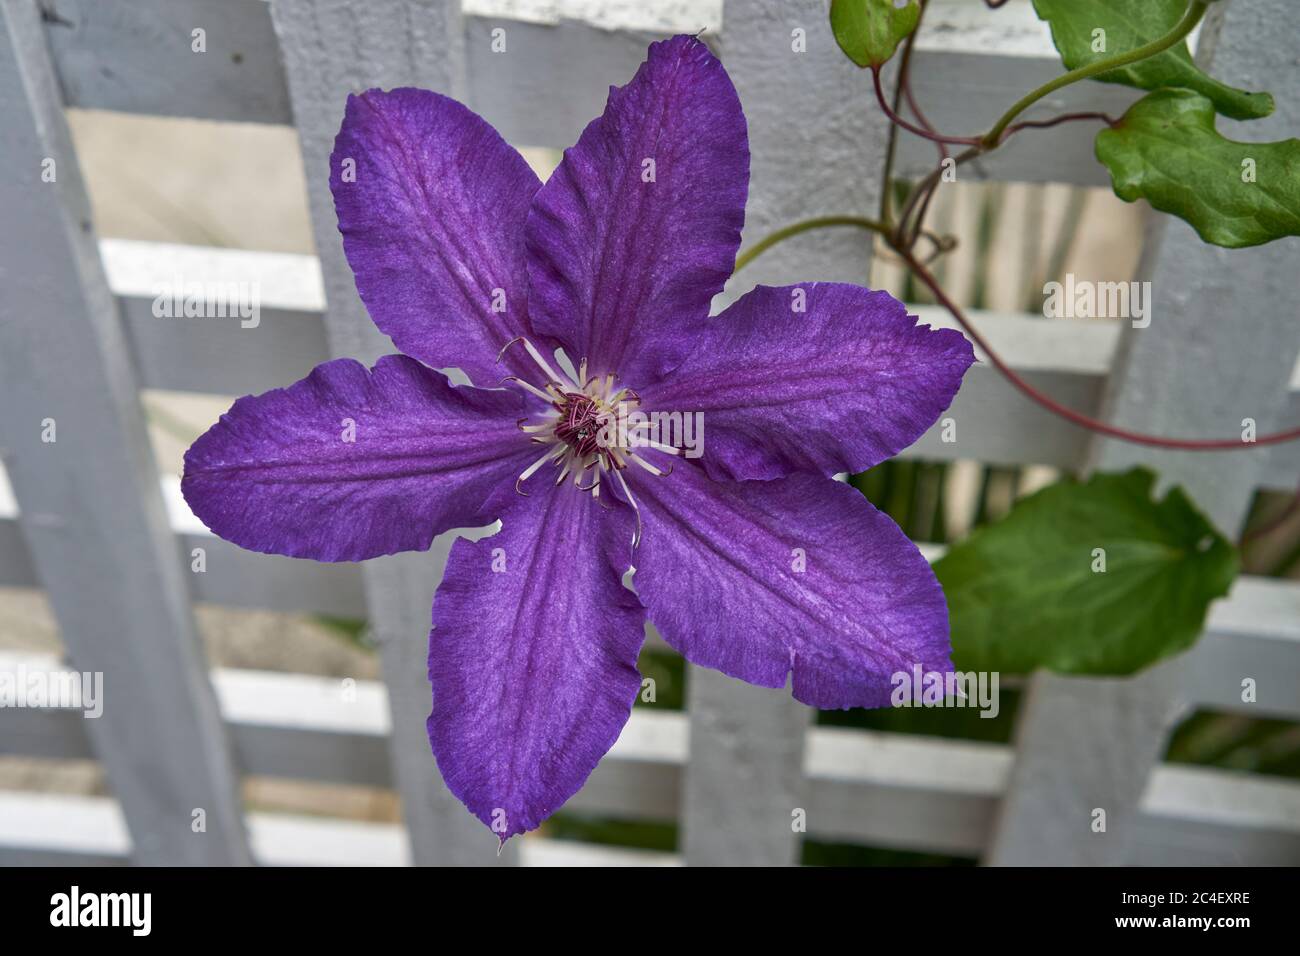 Primer plano de una flor y una vid llaga de color púrpura de Lasurstern contra un enrejado de madera blanca Foto de stock